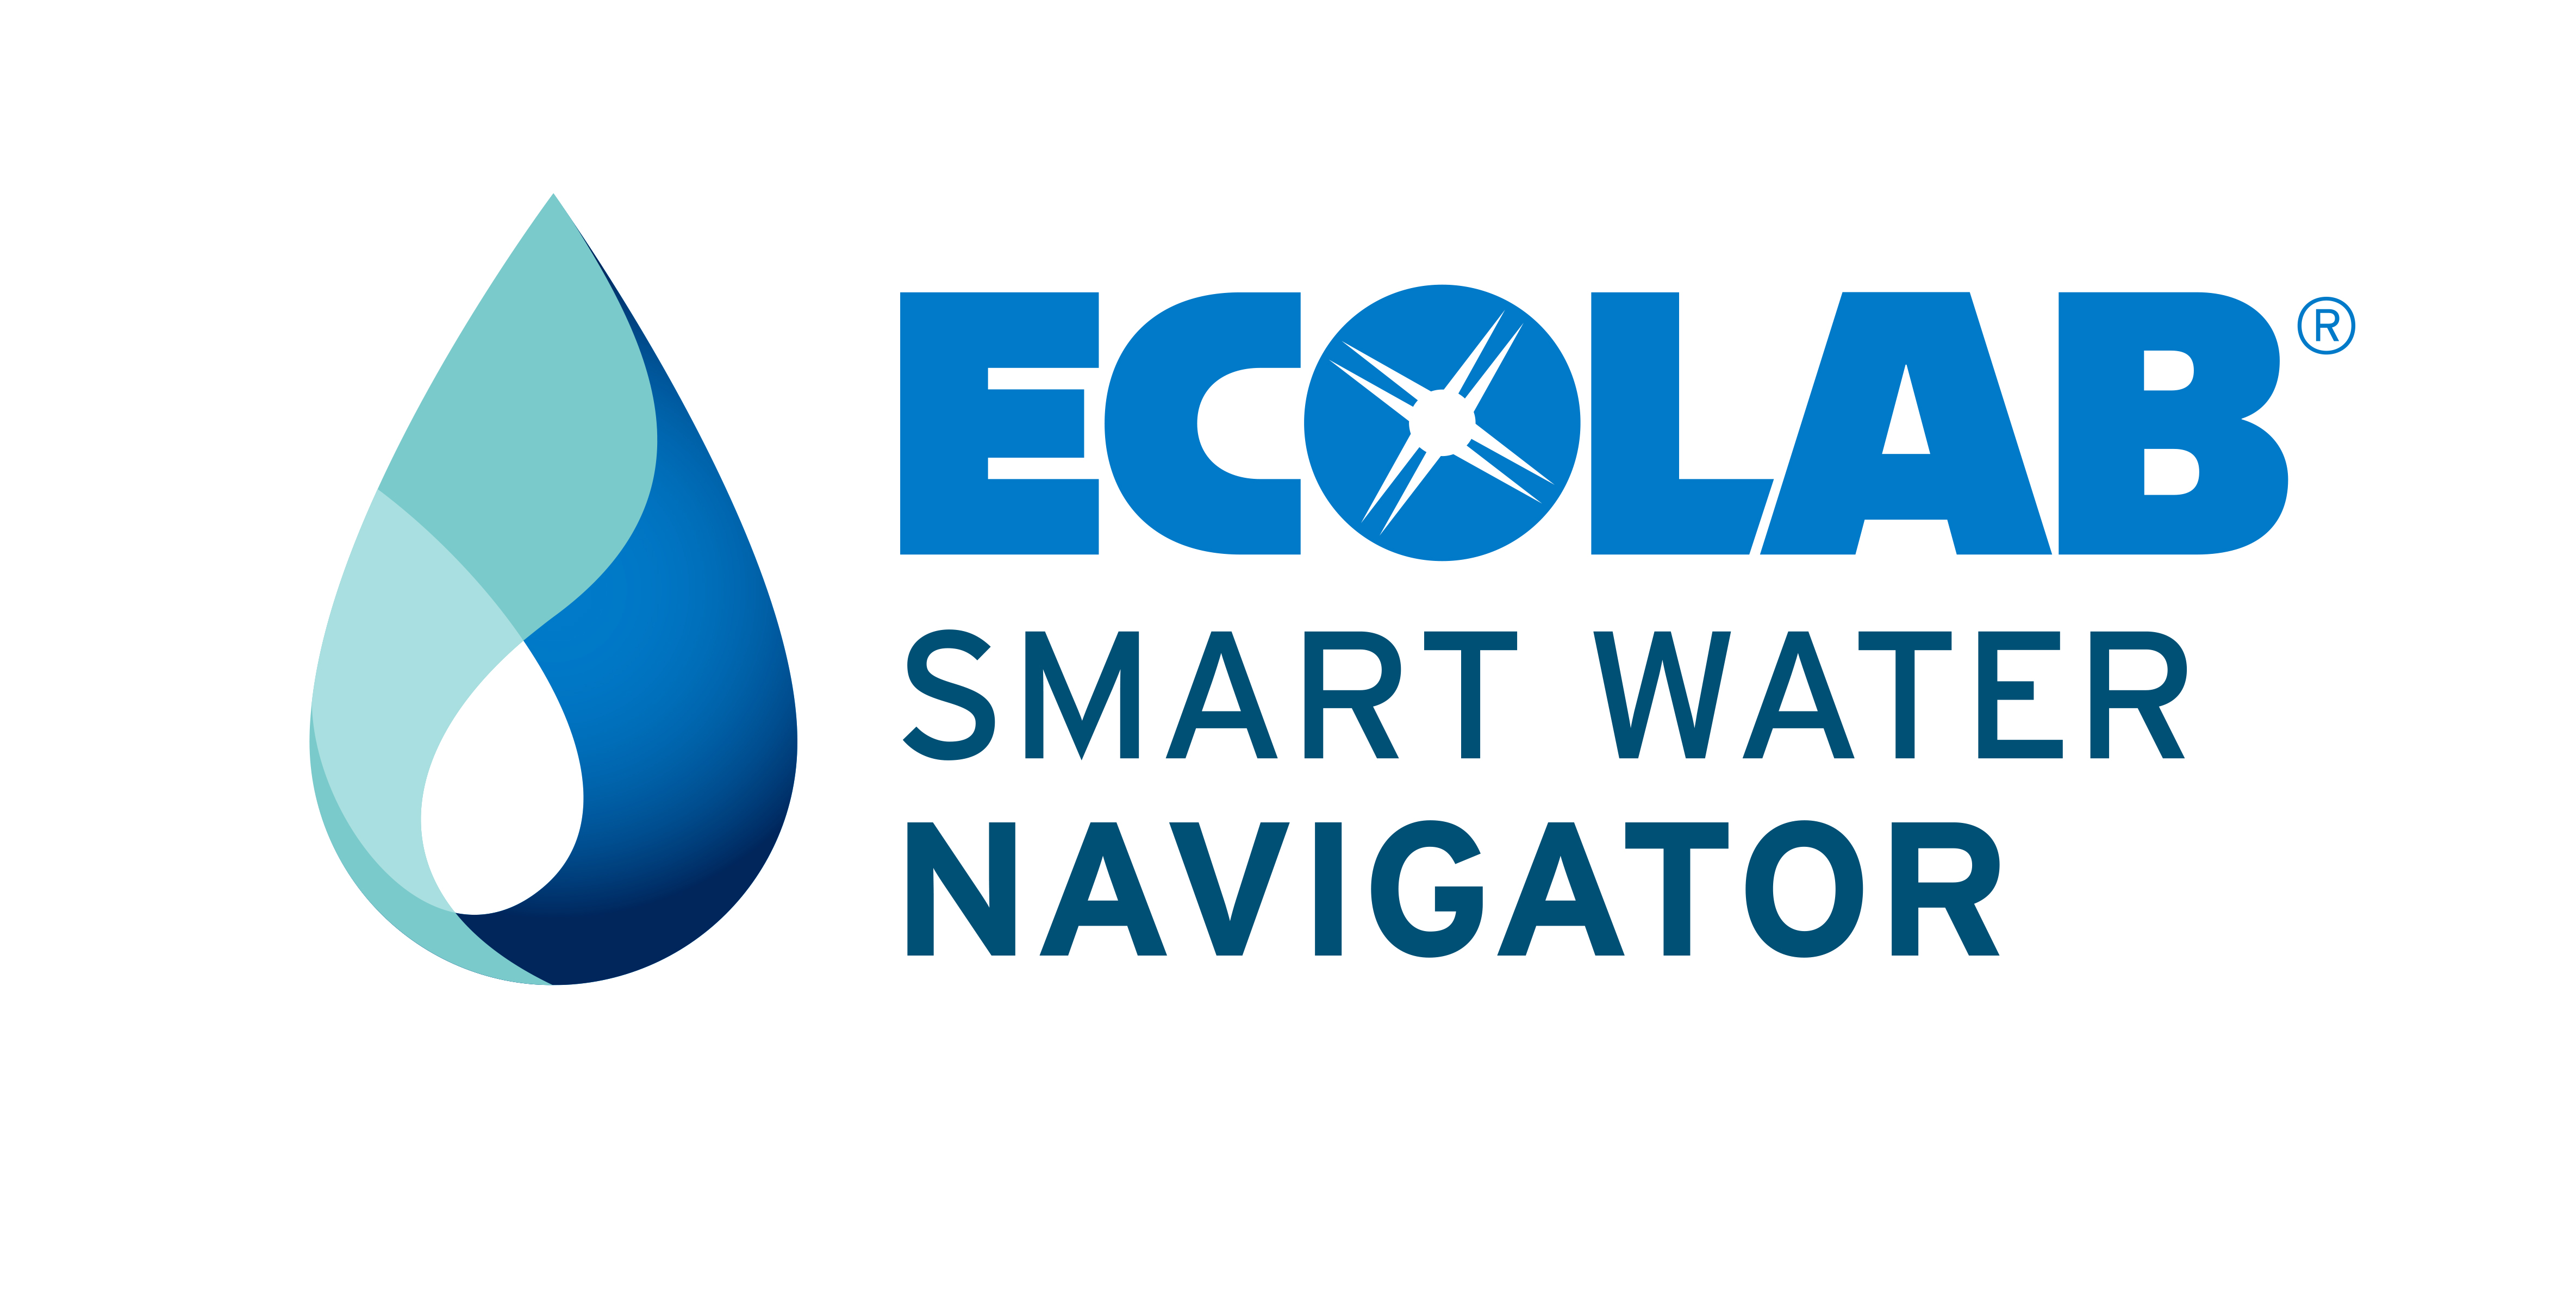 Ecolab Smart Water Navigator.jpg